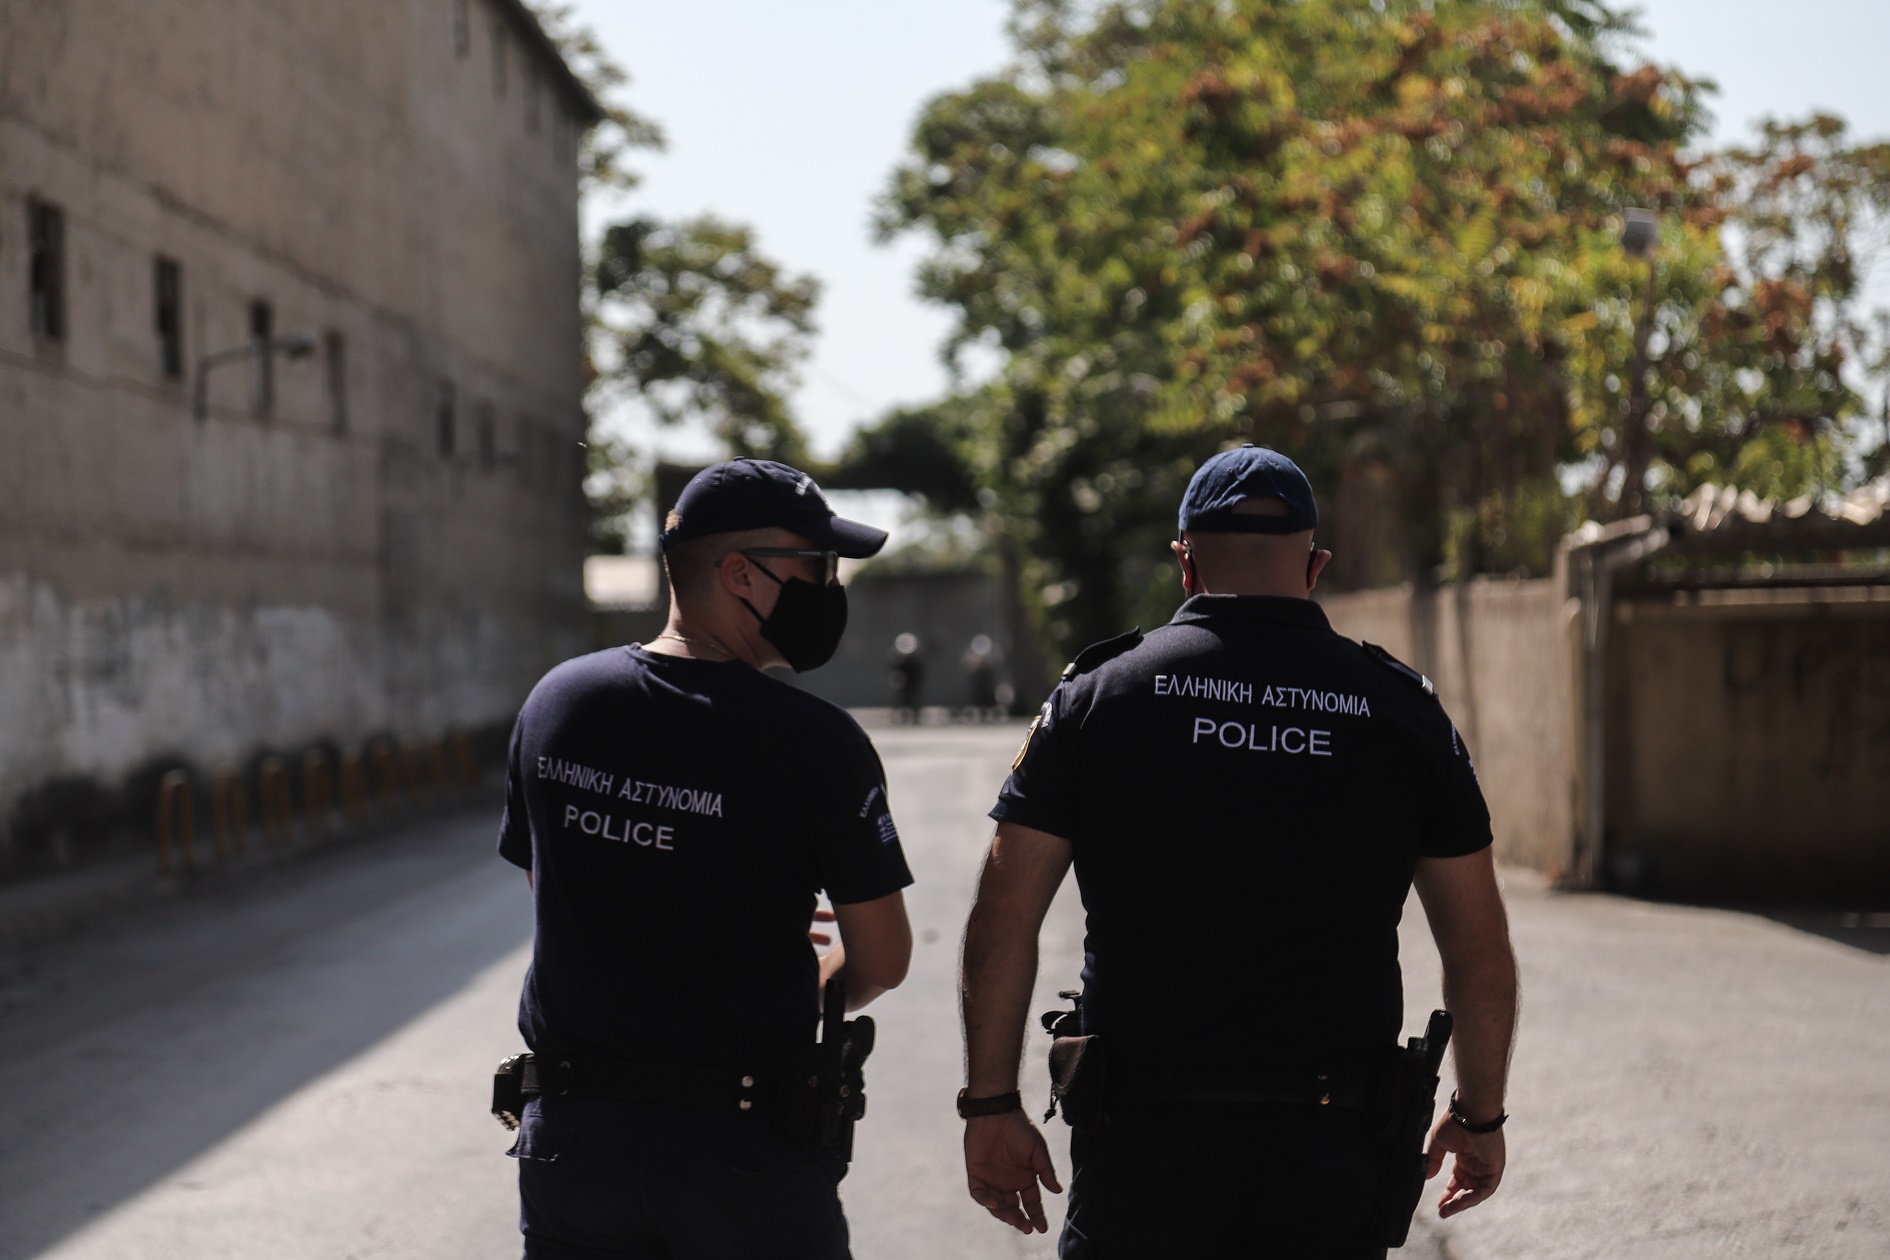 Ρομά Αχαΐα: Μπλόκαραν και επιτέθηκαν στο αυτοκίνητο του Αστυνομικού Διευθυντή